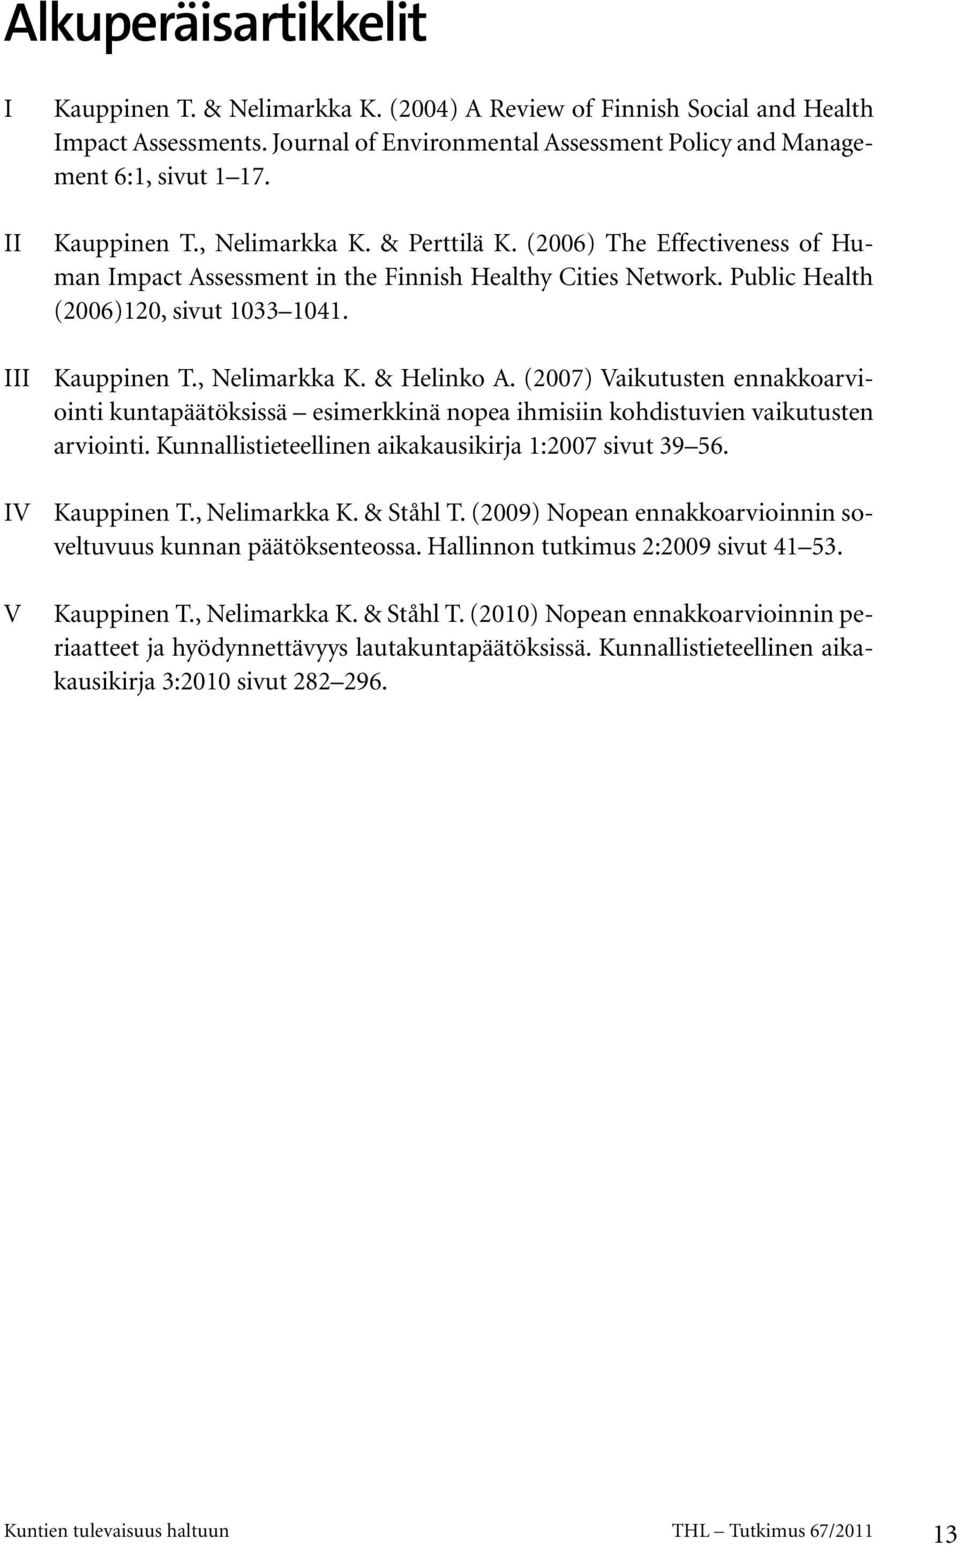 , Nelimarkka K. & Helinko A. (2007) Vaikutusten ennakkoarviointi kuntapäätöksissä esimerkkinä nopea ihmisiin kohdistuvien vaikutusten arviointi.